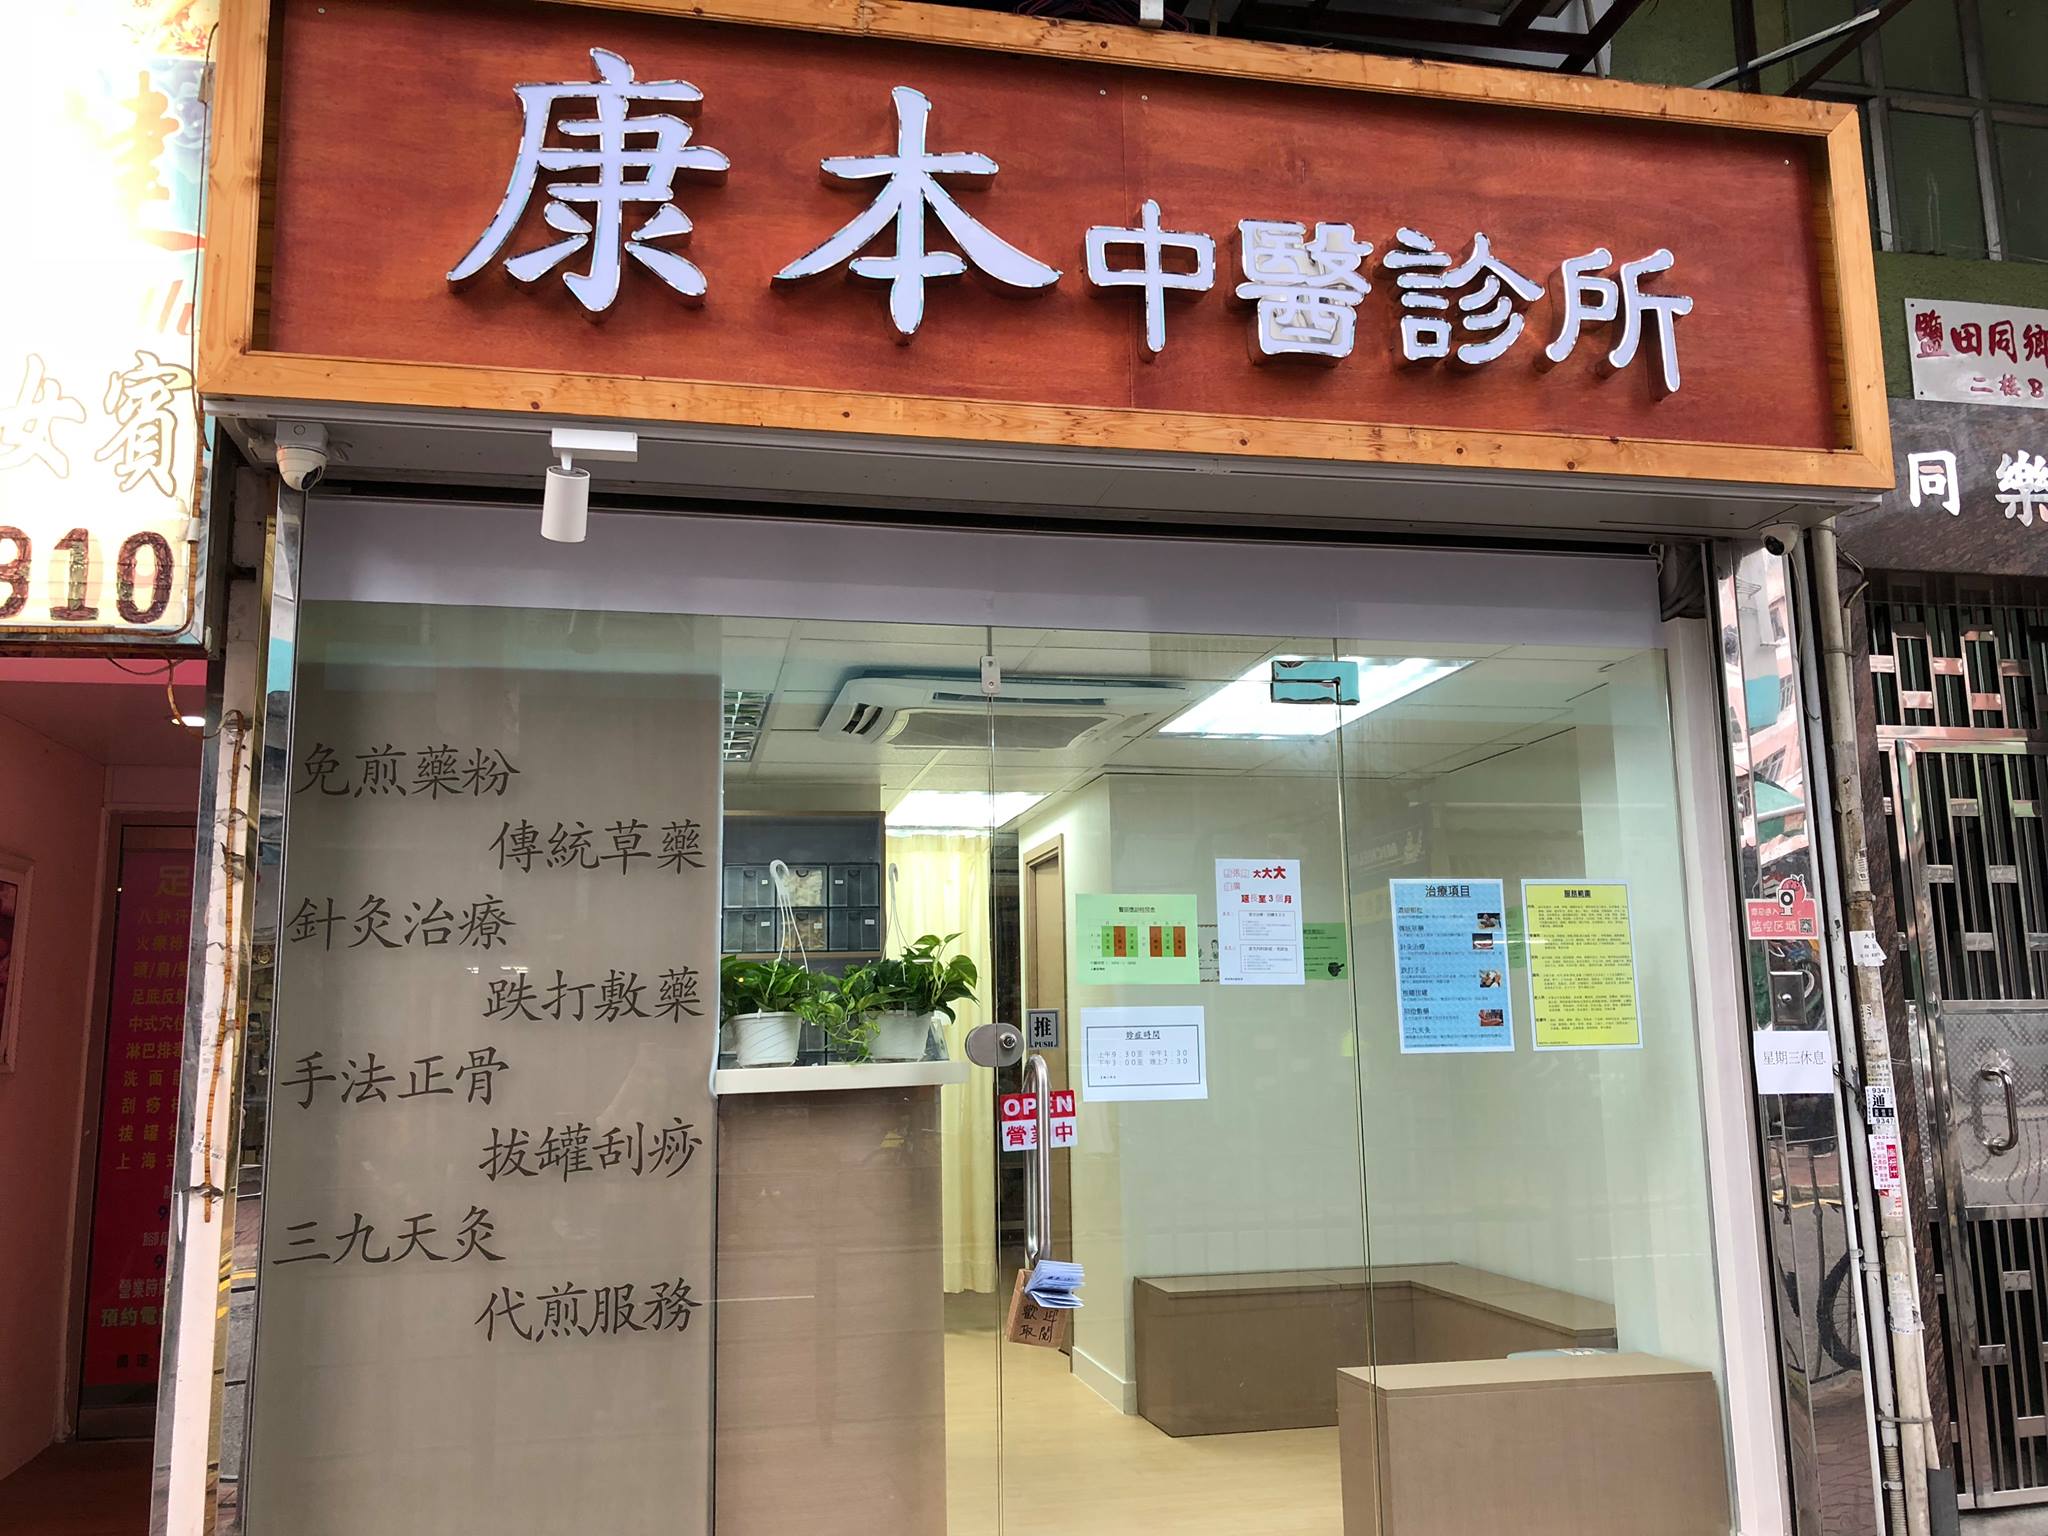 中医儿科: 康本中醫診所